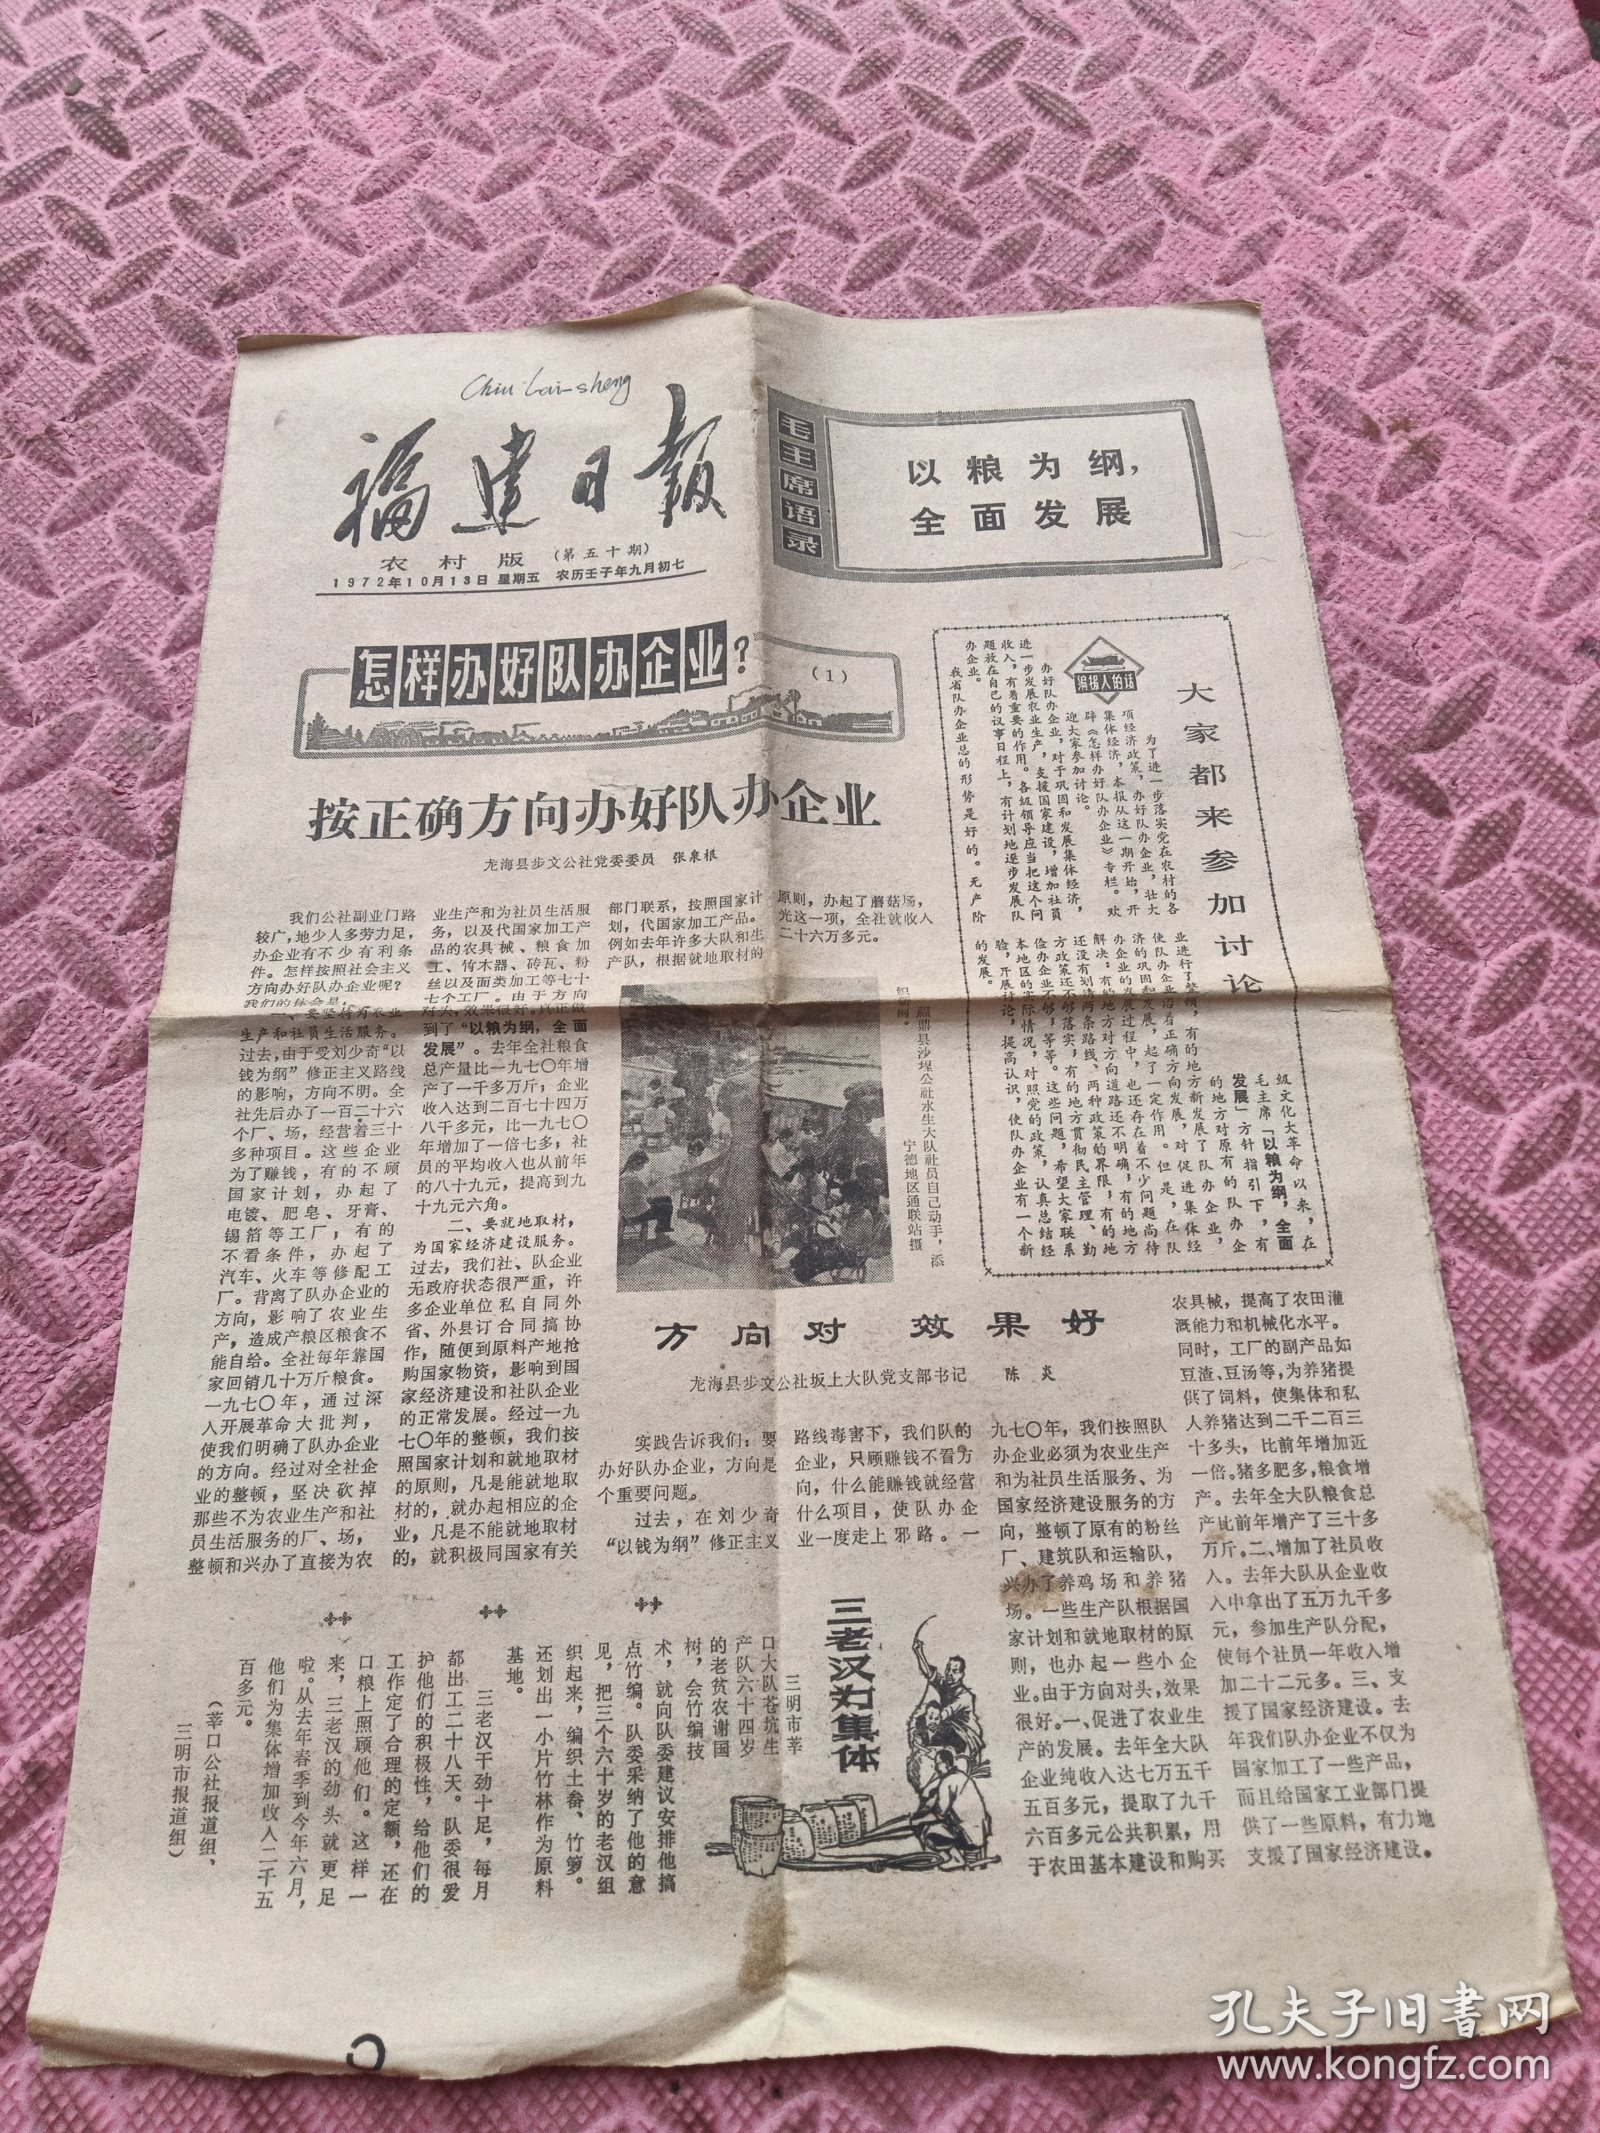 福建日报。农村版，1972年10月13日